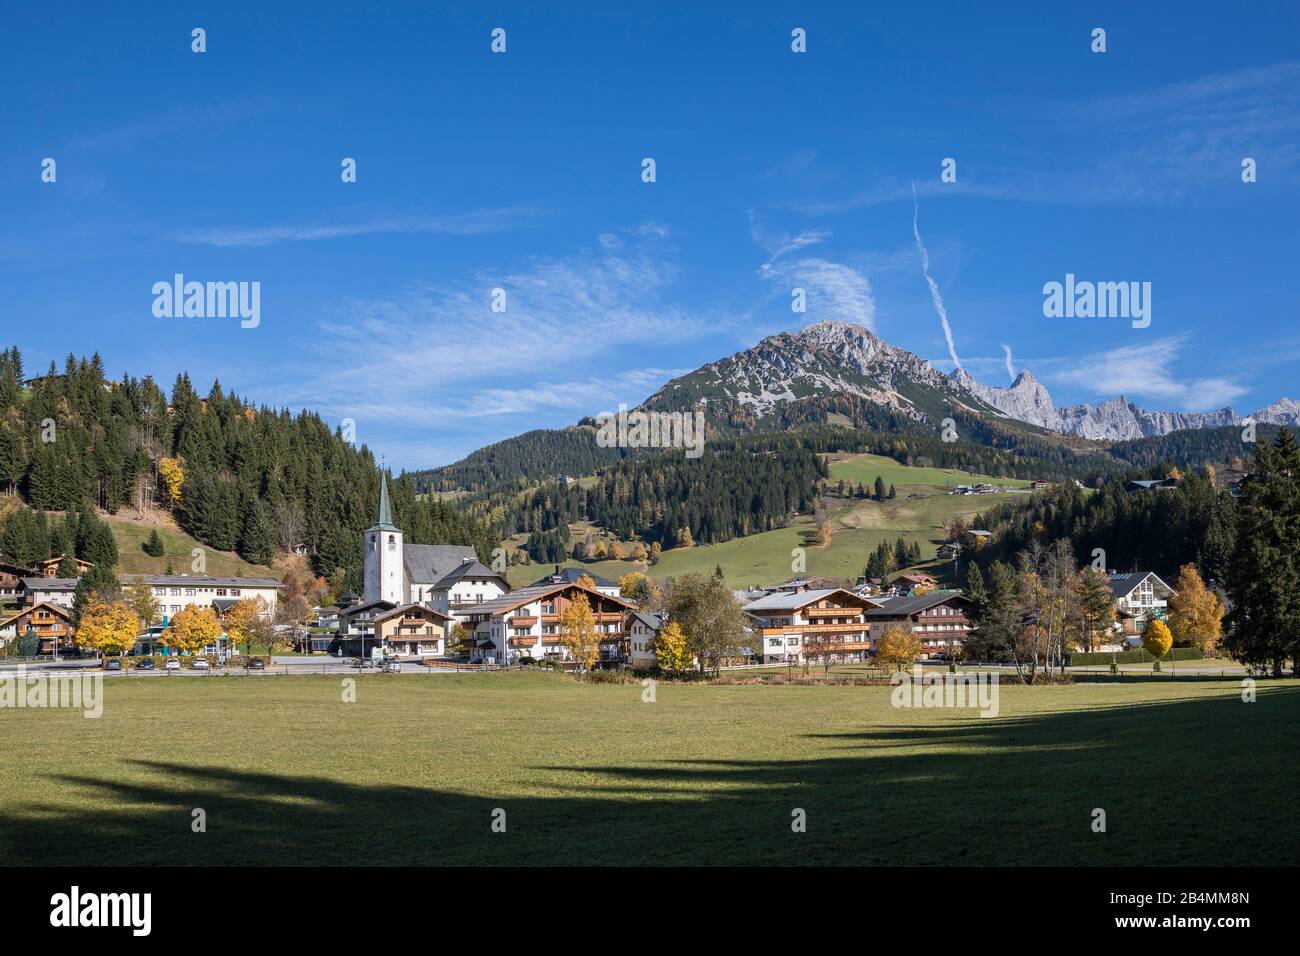 Blick auf Filzmoos, hinten der Rötelstein (auch Rettenstein 2245 m), Bezirk St. Johann im Pongau, Land Salzburg, Österreich, Oktober 2019 Stock Photo